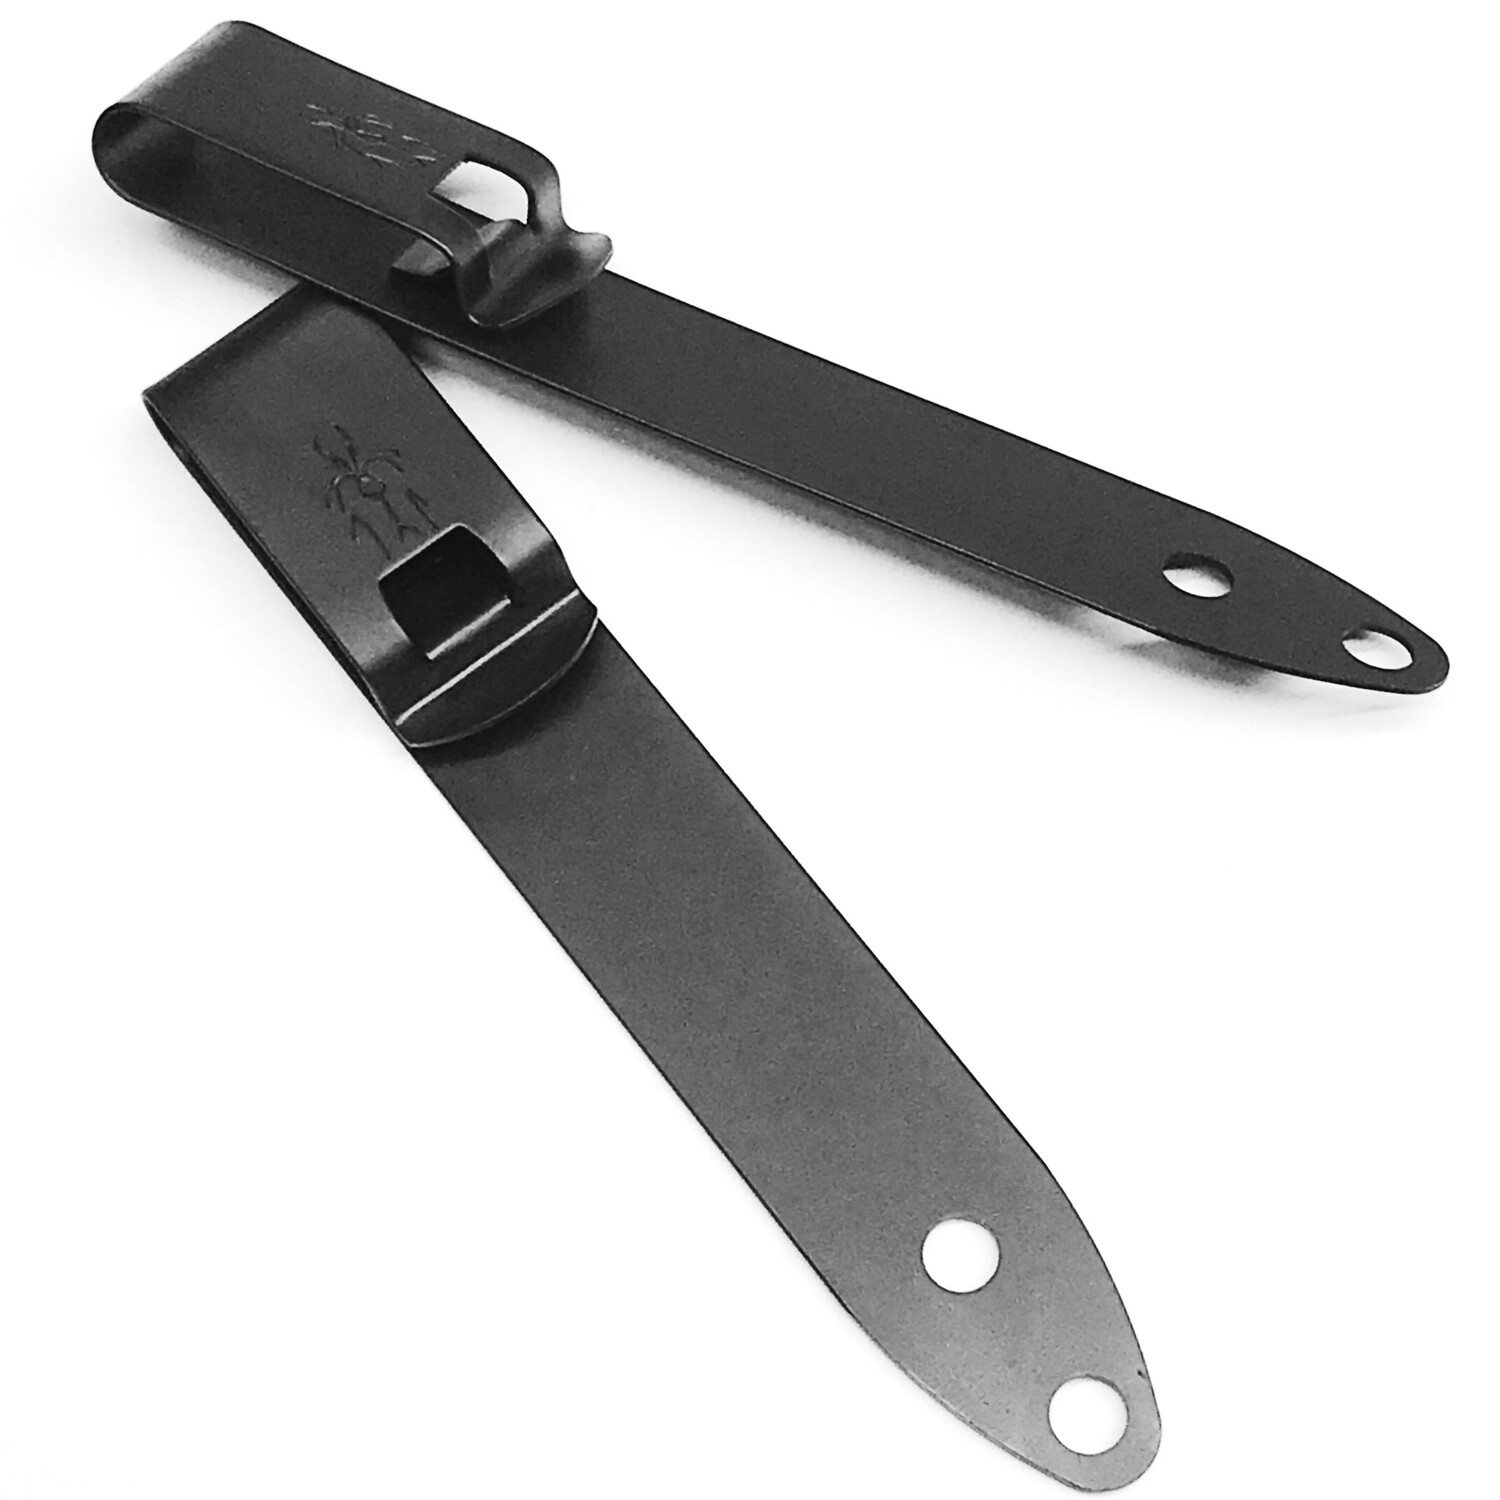 Mod 9 - HLR Discreet Gear Clip™ - behind the belt - Deep Carry